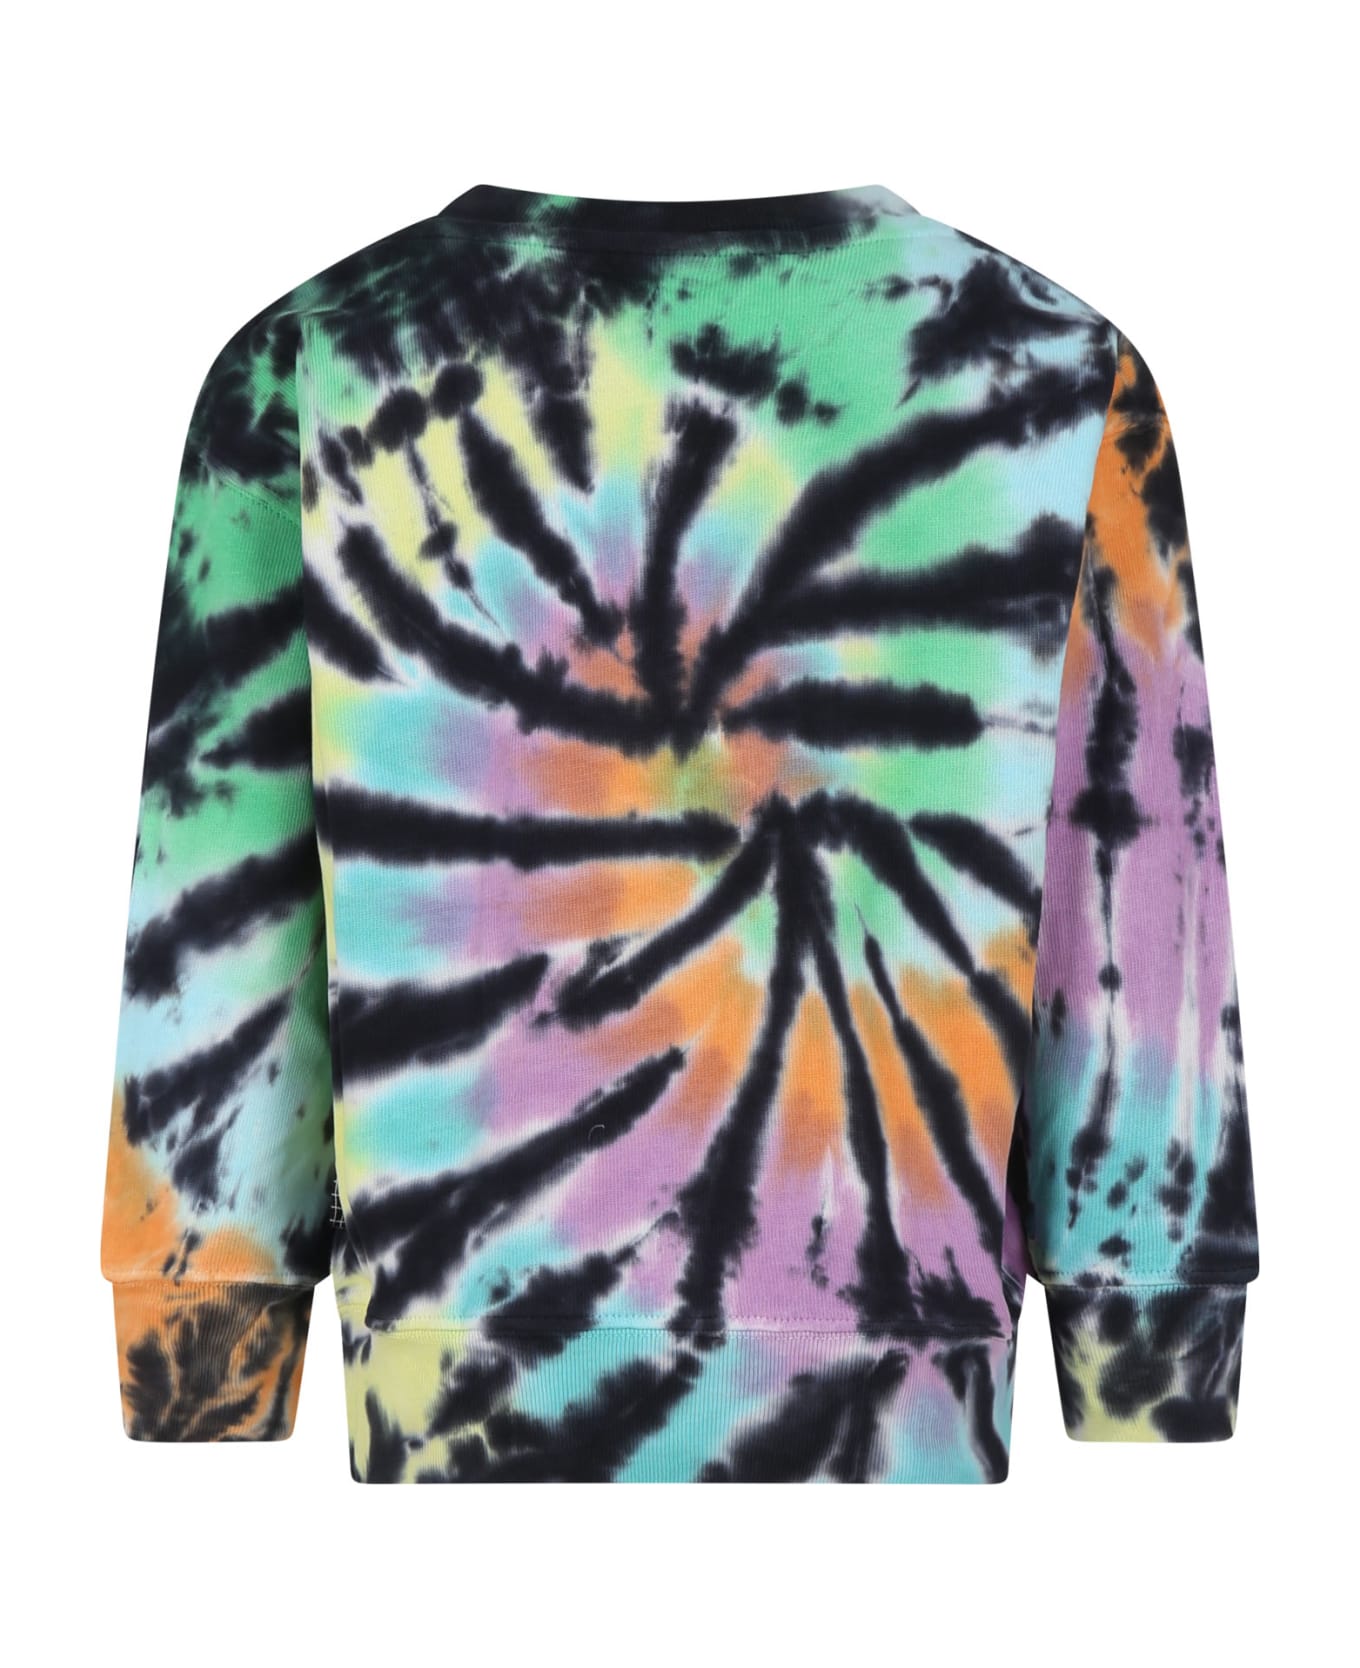 Molo Black Sweatshirt For Boy With Tie-dye Print - Multicolor